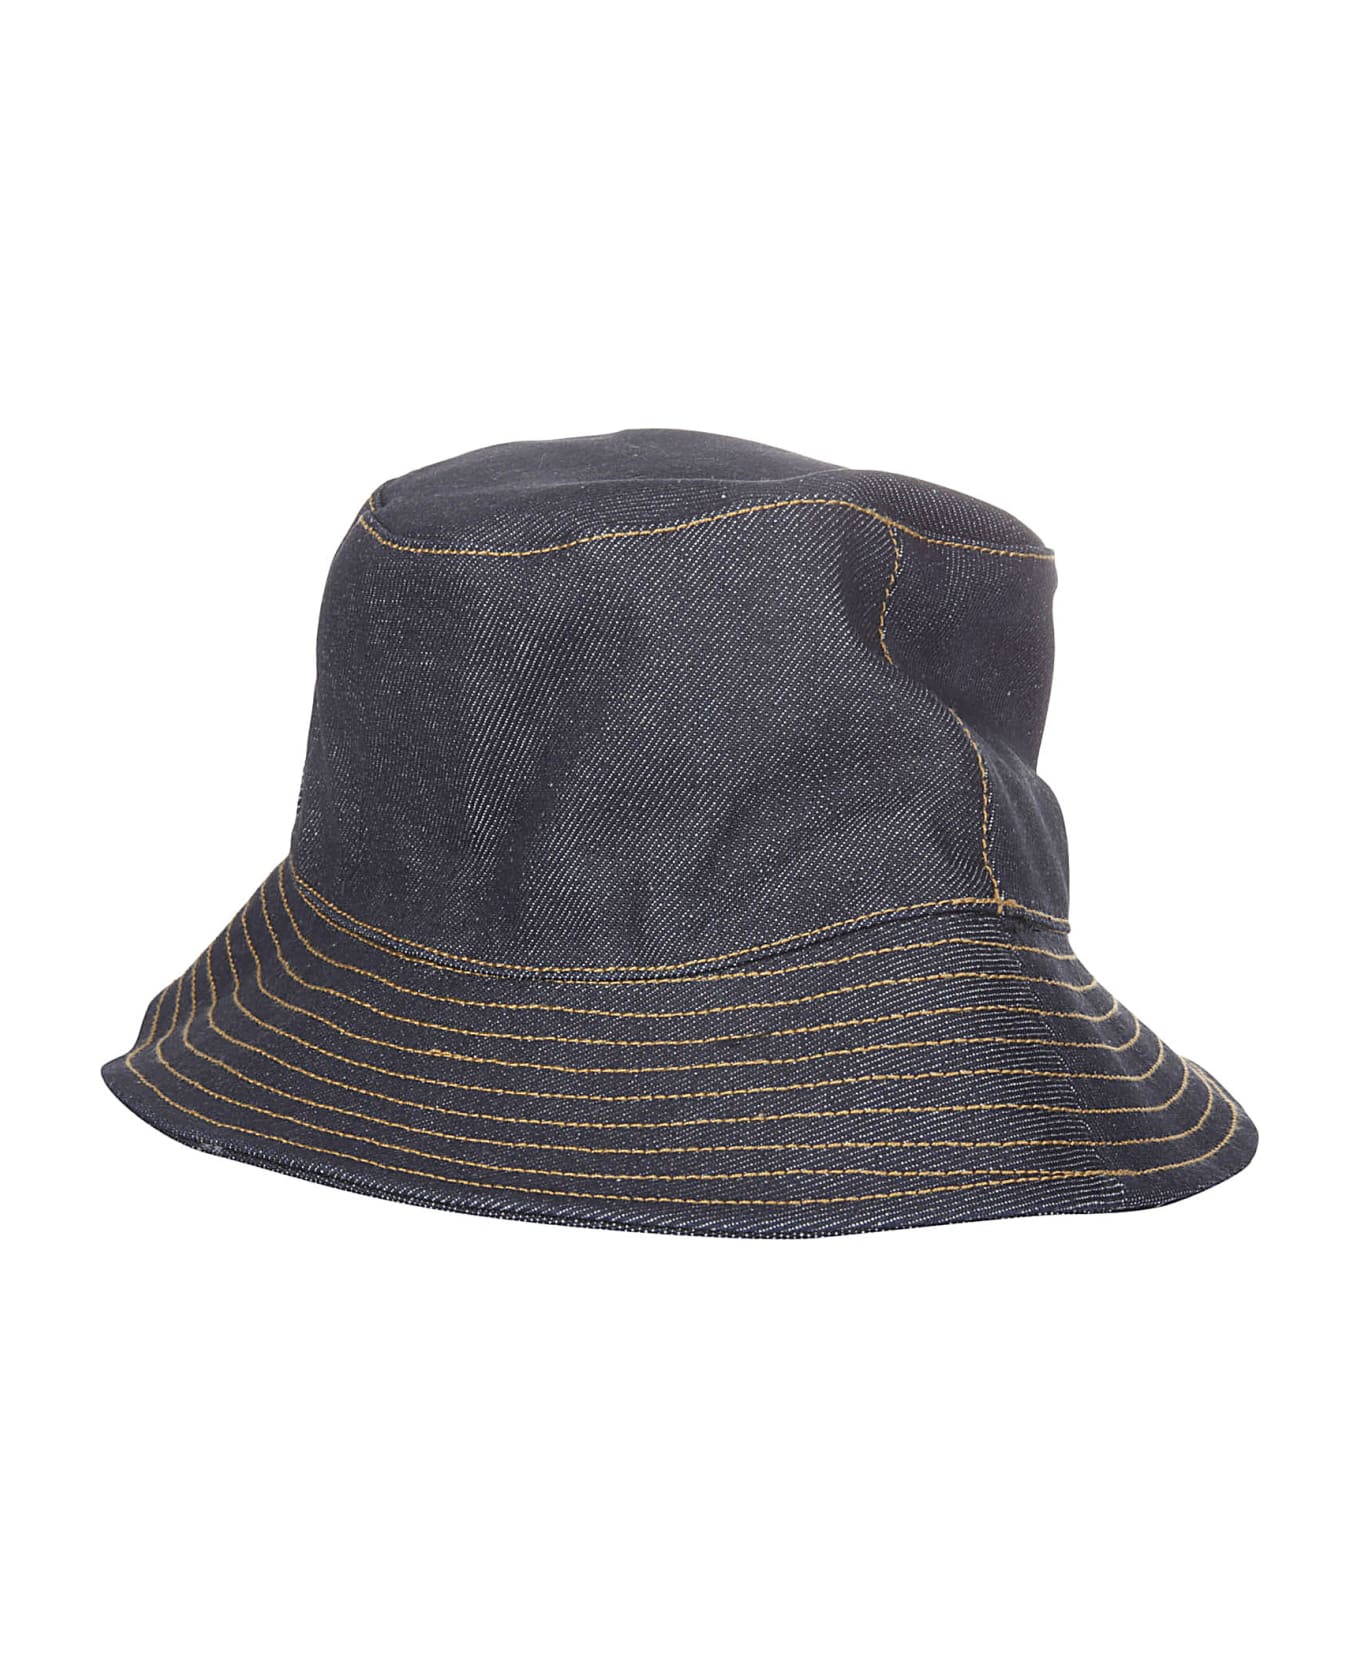 A.P.C. Bob Thais Bucket Hat - IAI 帽子